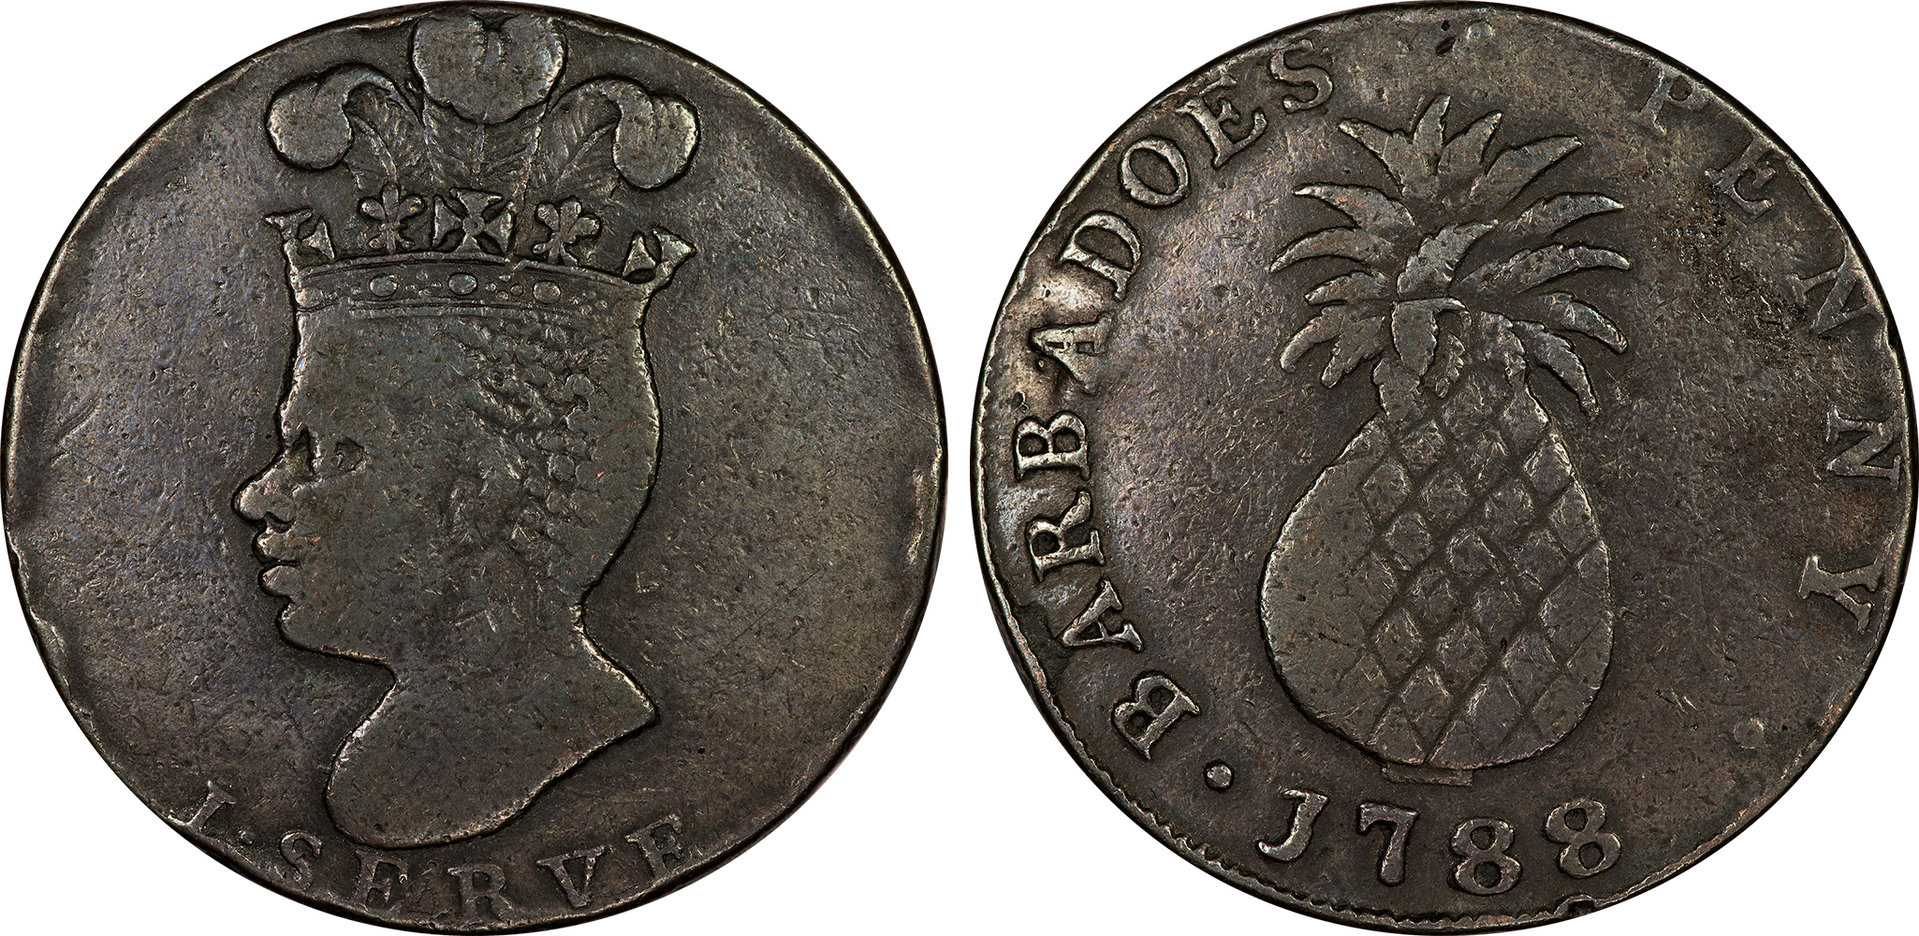 Barbados - 1788 1 Penny.jpg